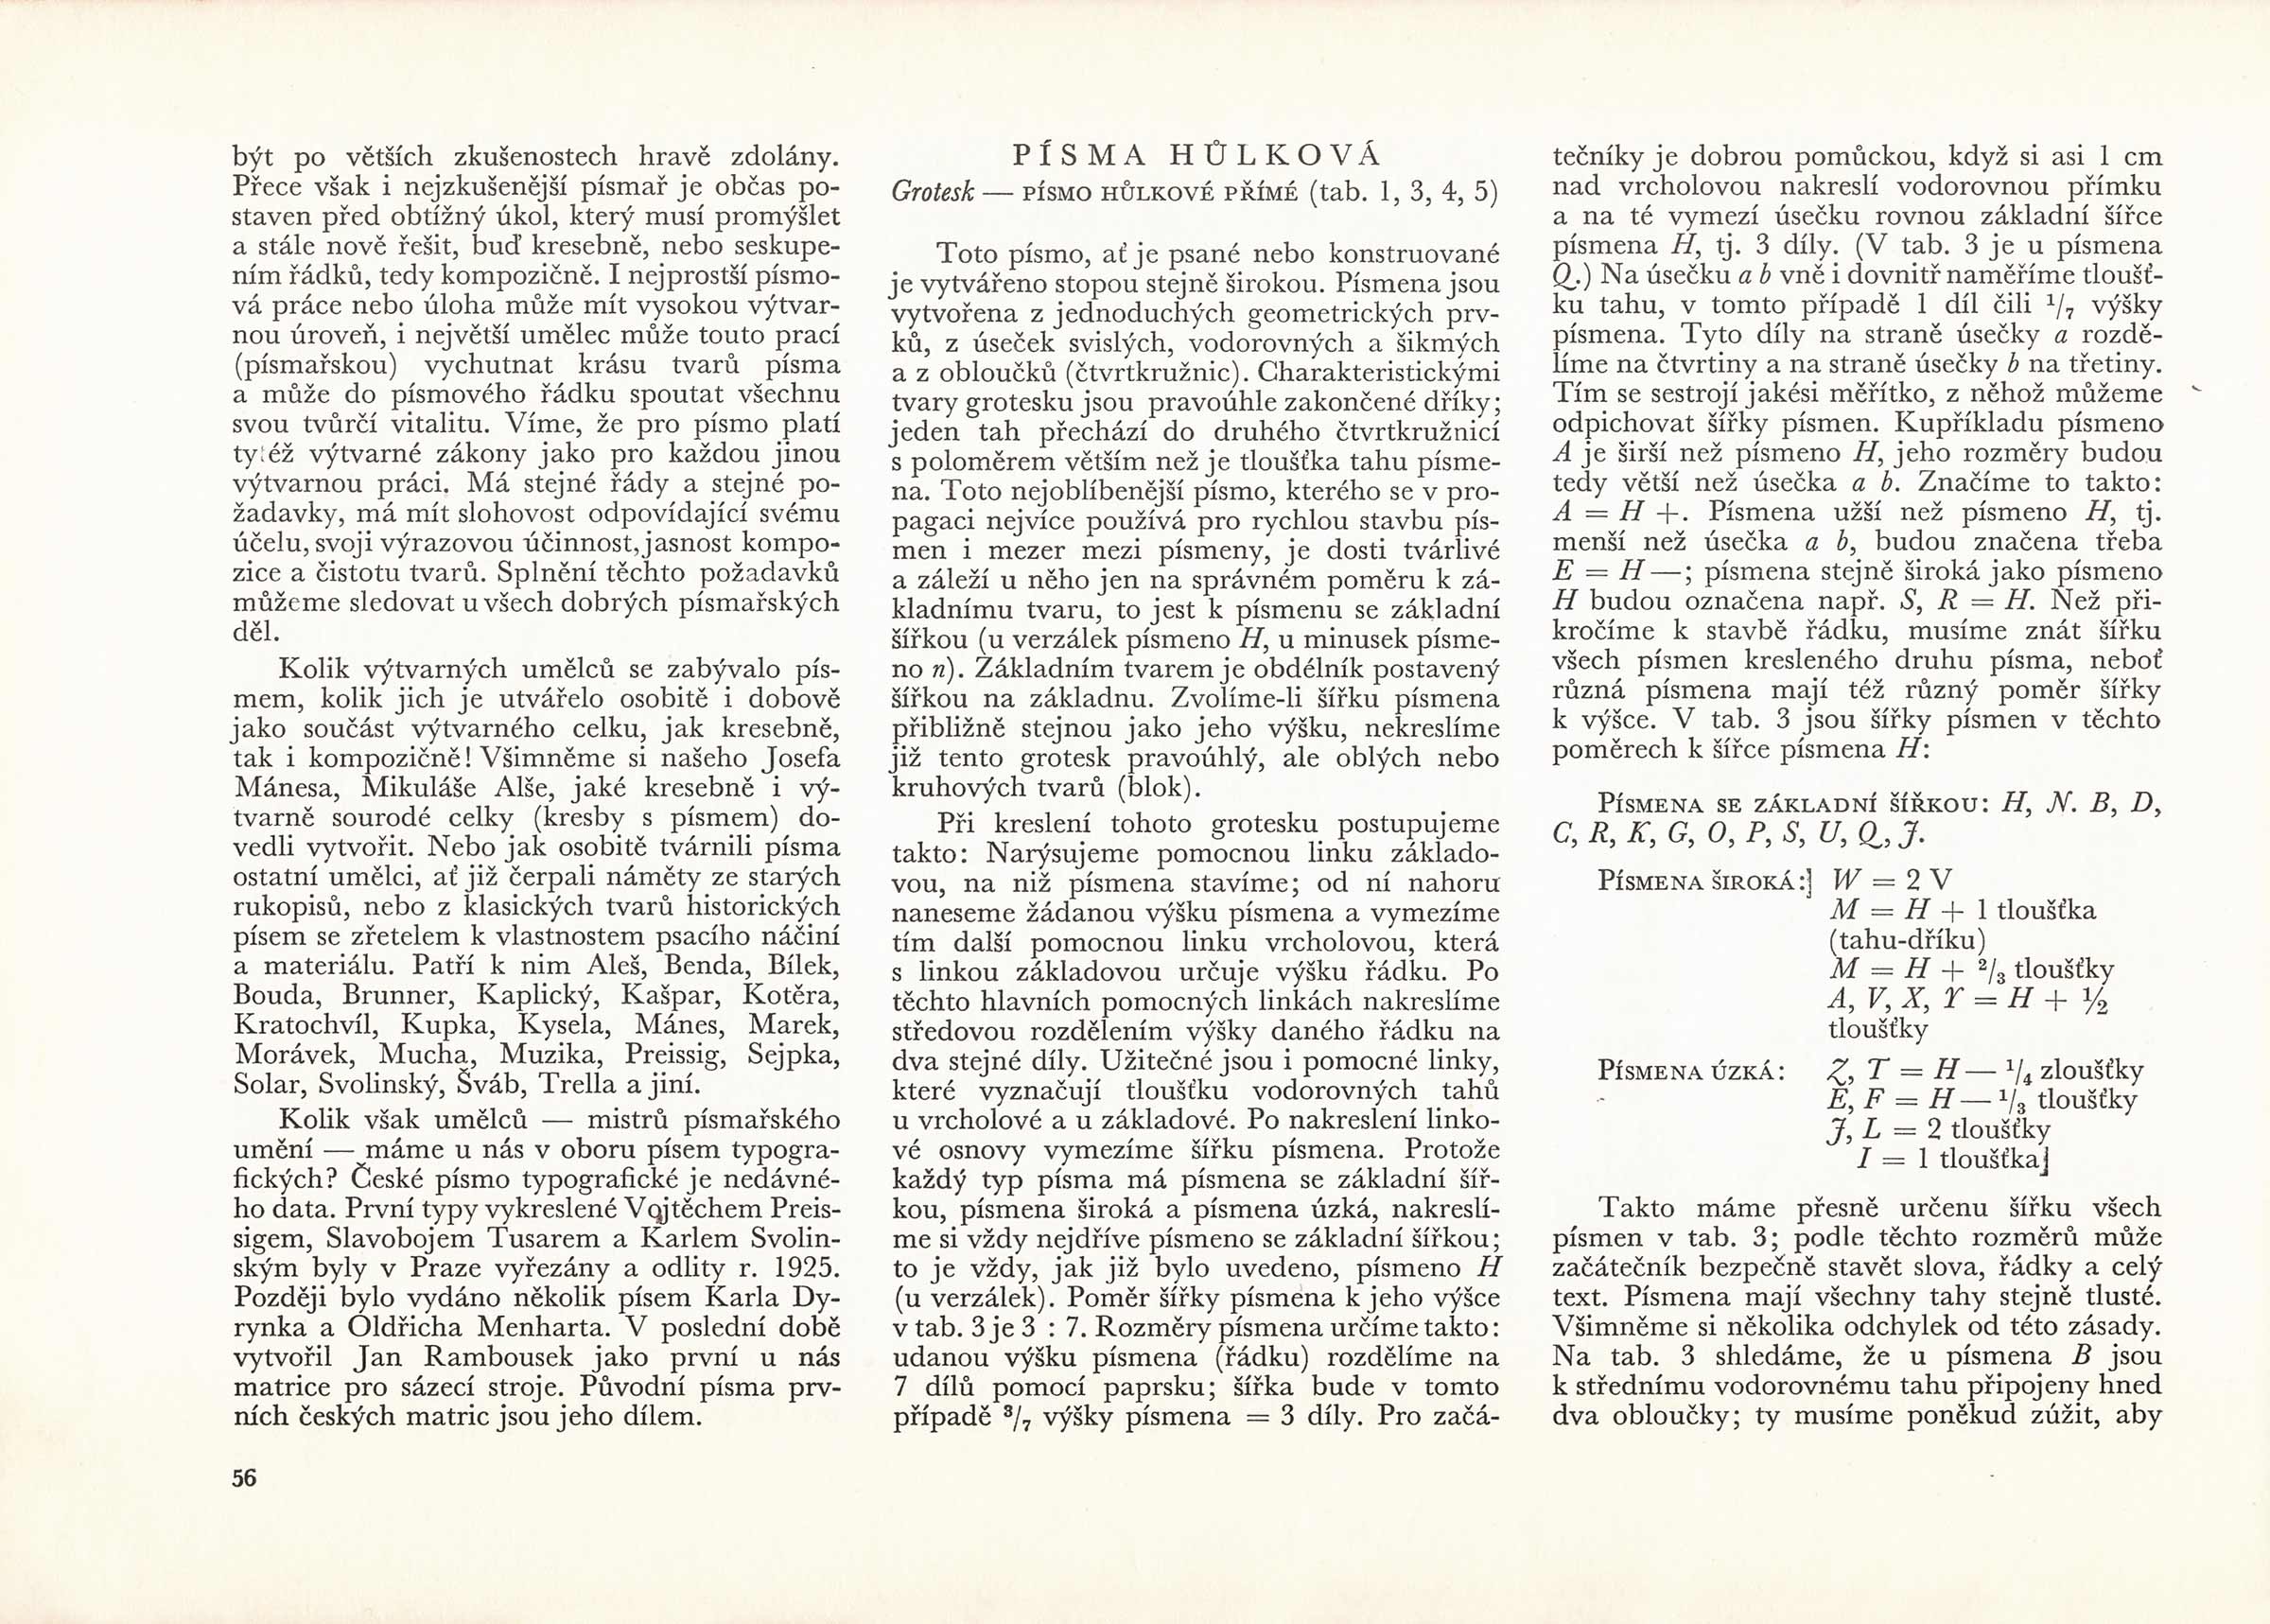 Richard Pípal vo svojej publikácii Písmo a jeho konstrukce veľmi podrobne na niekoľkých stranách popísal vlastnosti ako aj postup pri konštrukcii úzkeho kolmého grotesku.
https://manual.setuptype.com/